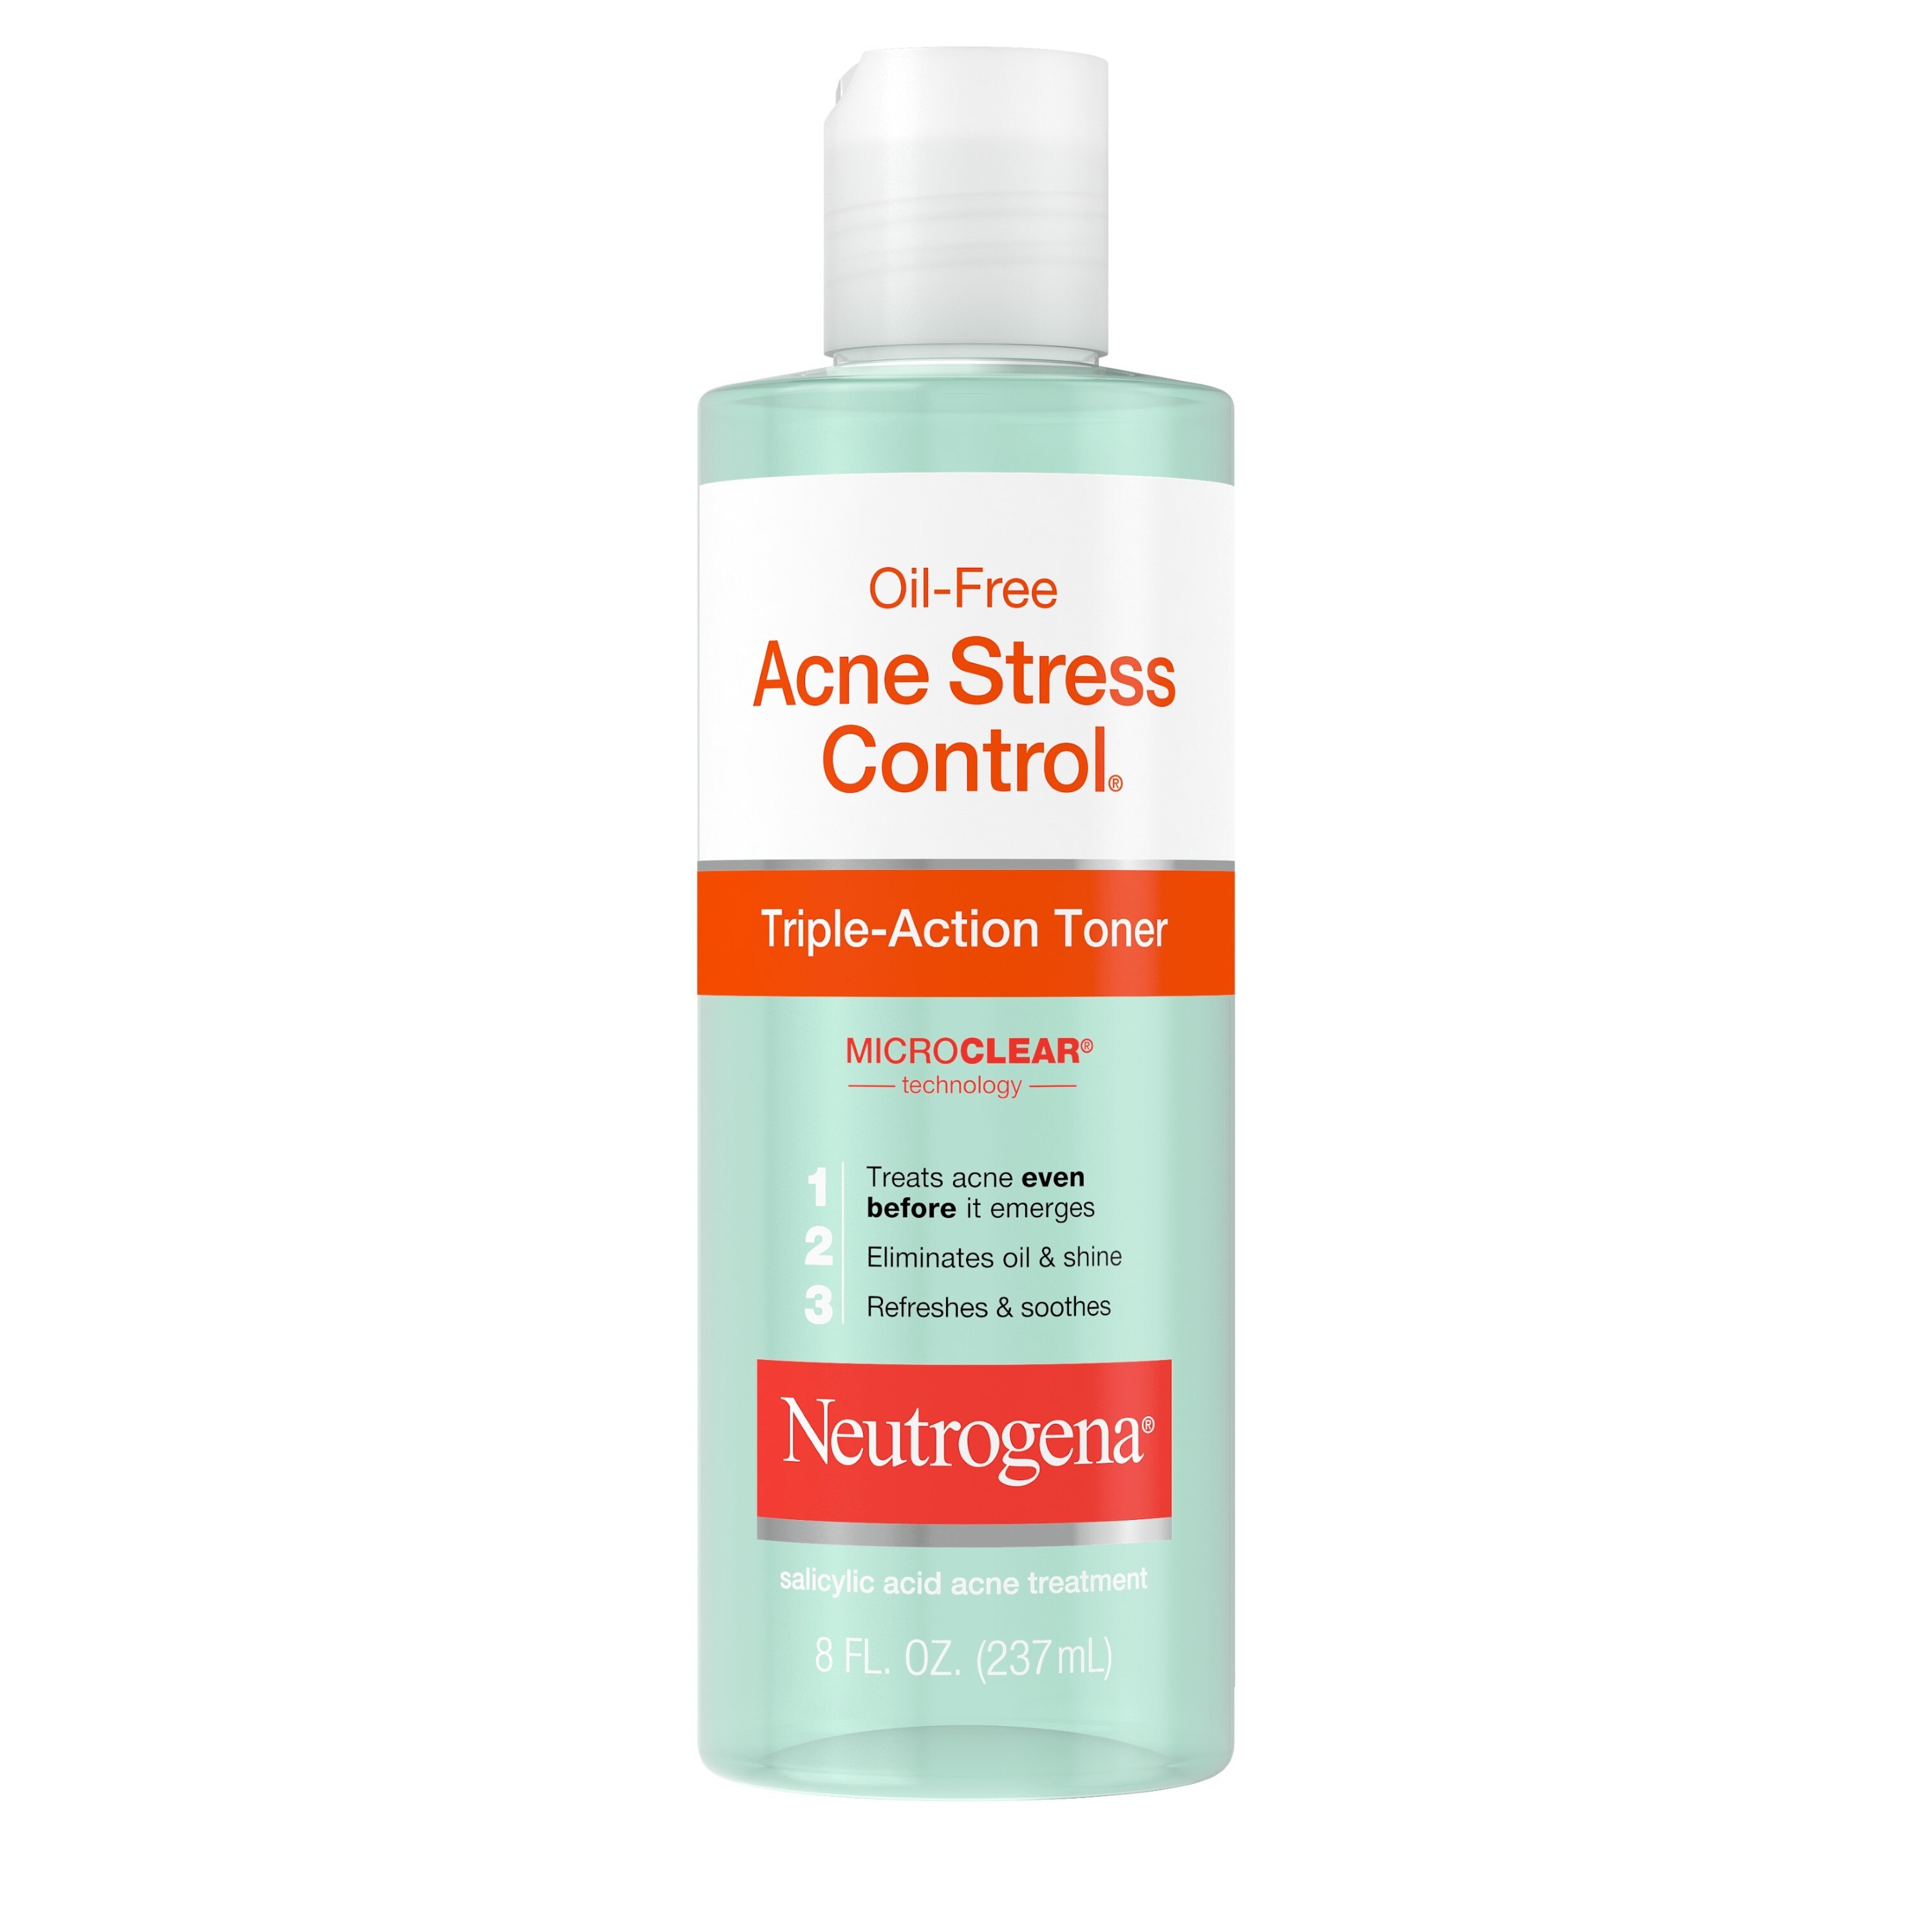 Neutrogena Oil-Free Acne Stress Control Triple-Action Toner, 8 OZ